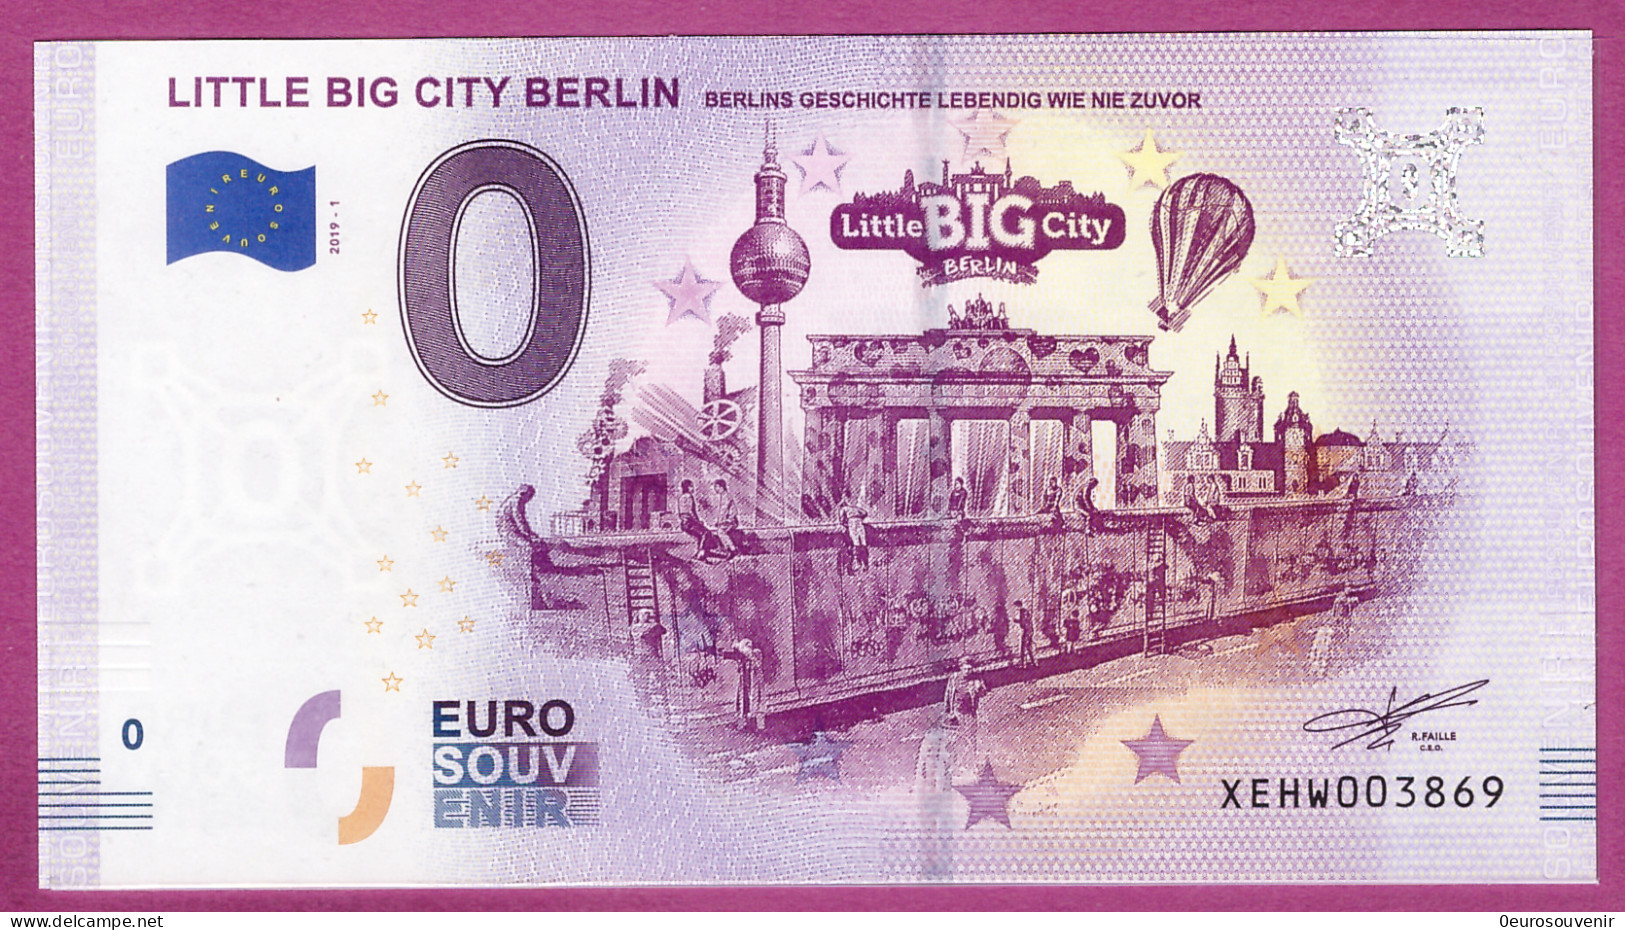 0-Euro XEHW 2019-1 LITTLE BIG CITY BERLIN - BERLINS GESCHICHTE LEBENDIG WIE NIE ZUVOR - Prove Private